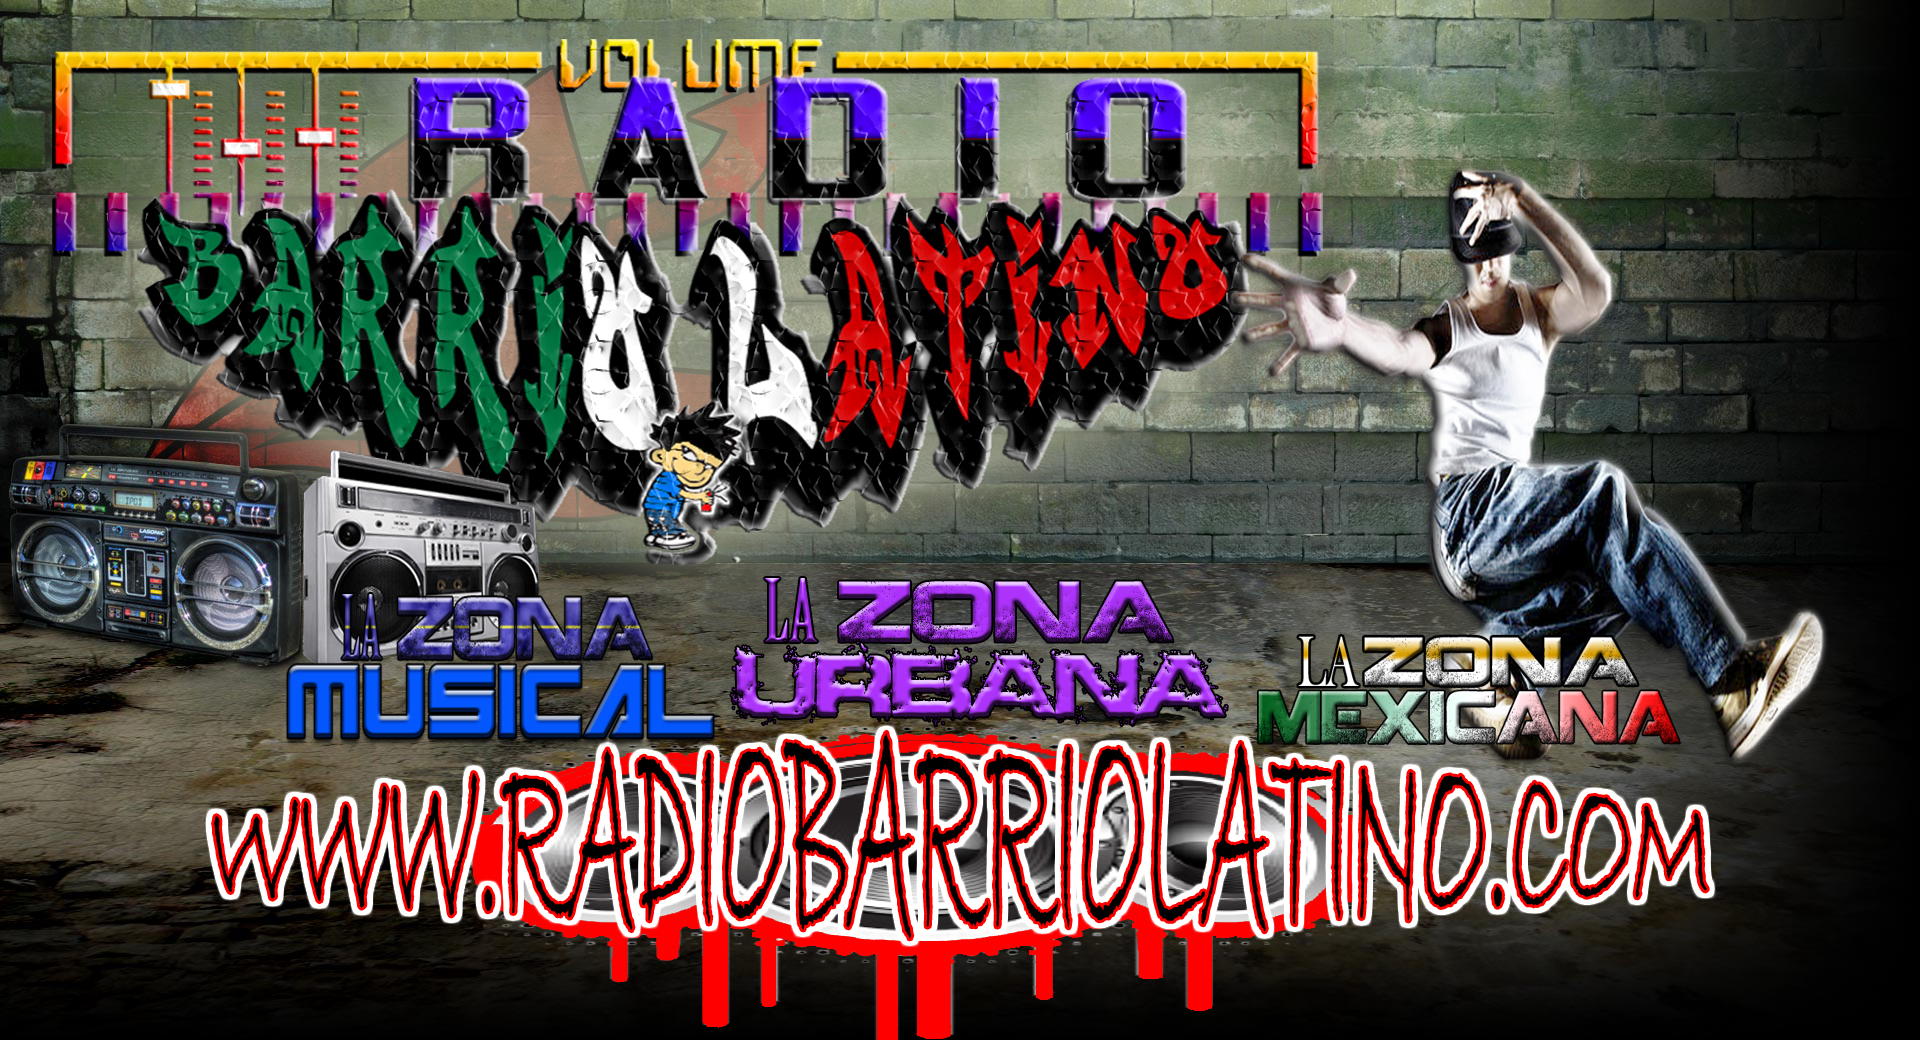 La Radio de El Barrio!